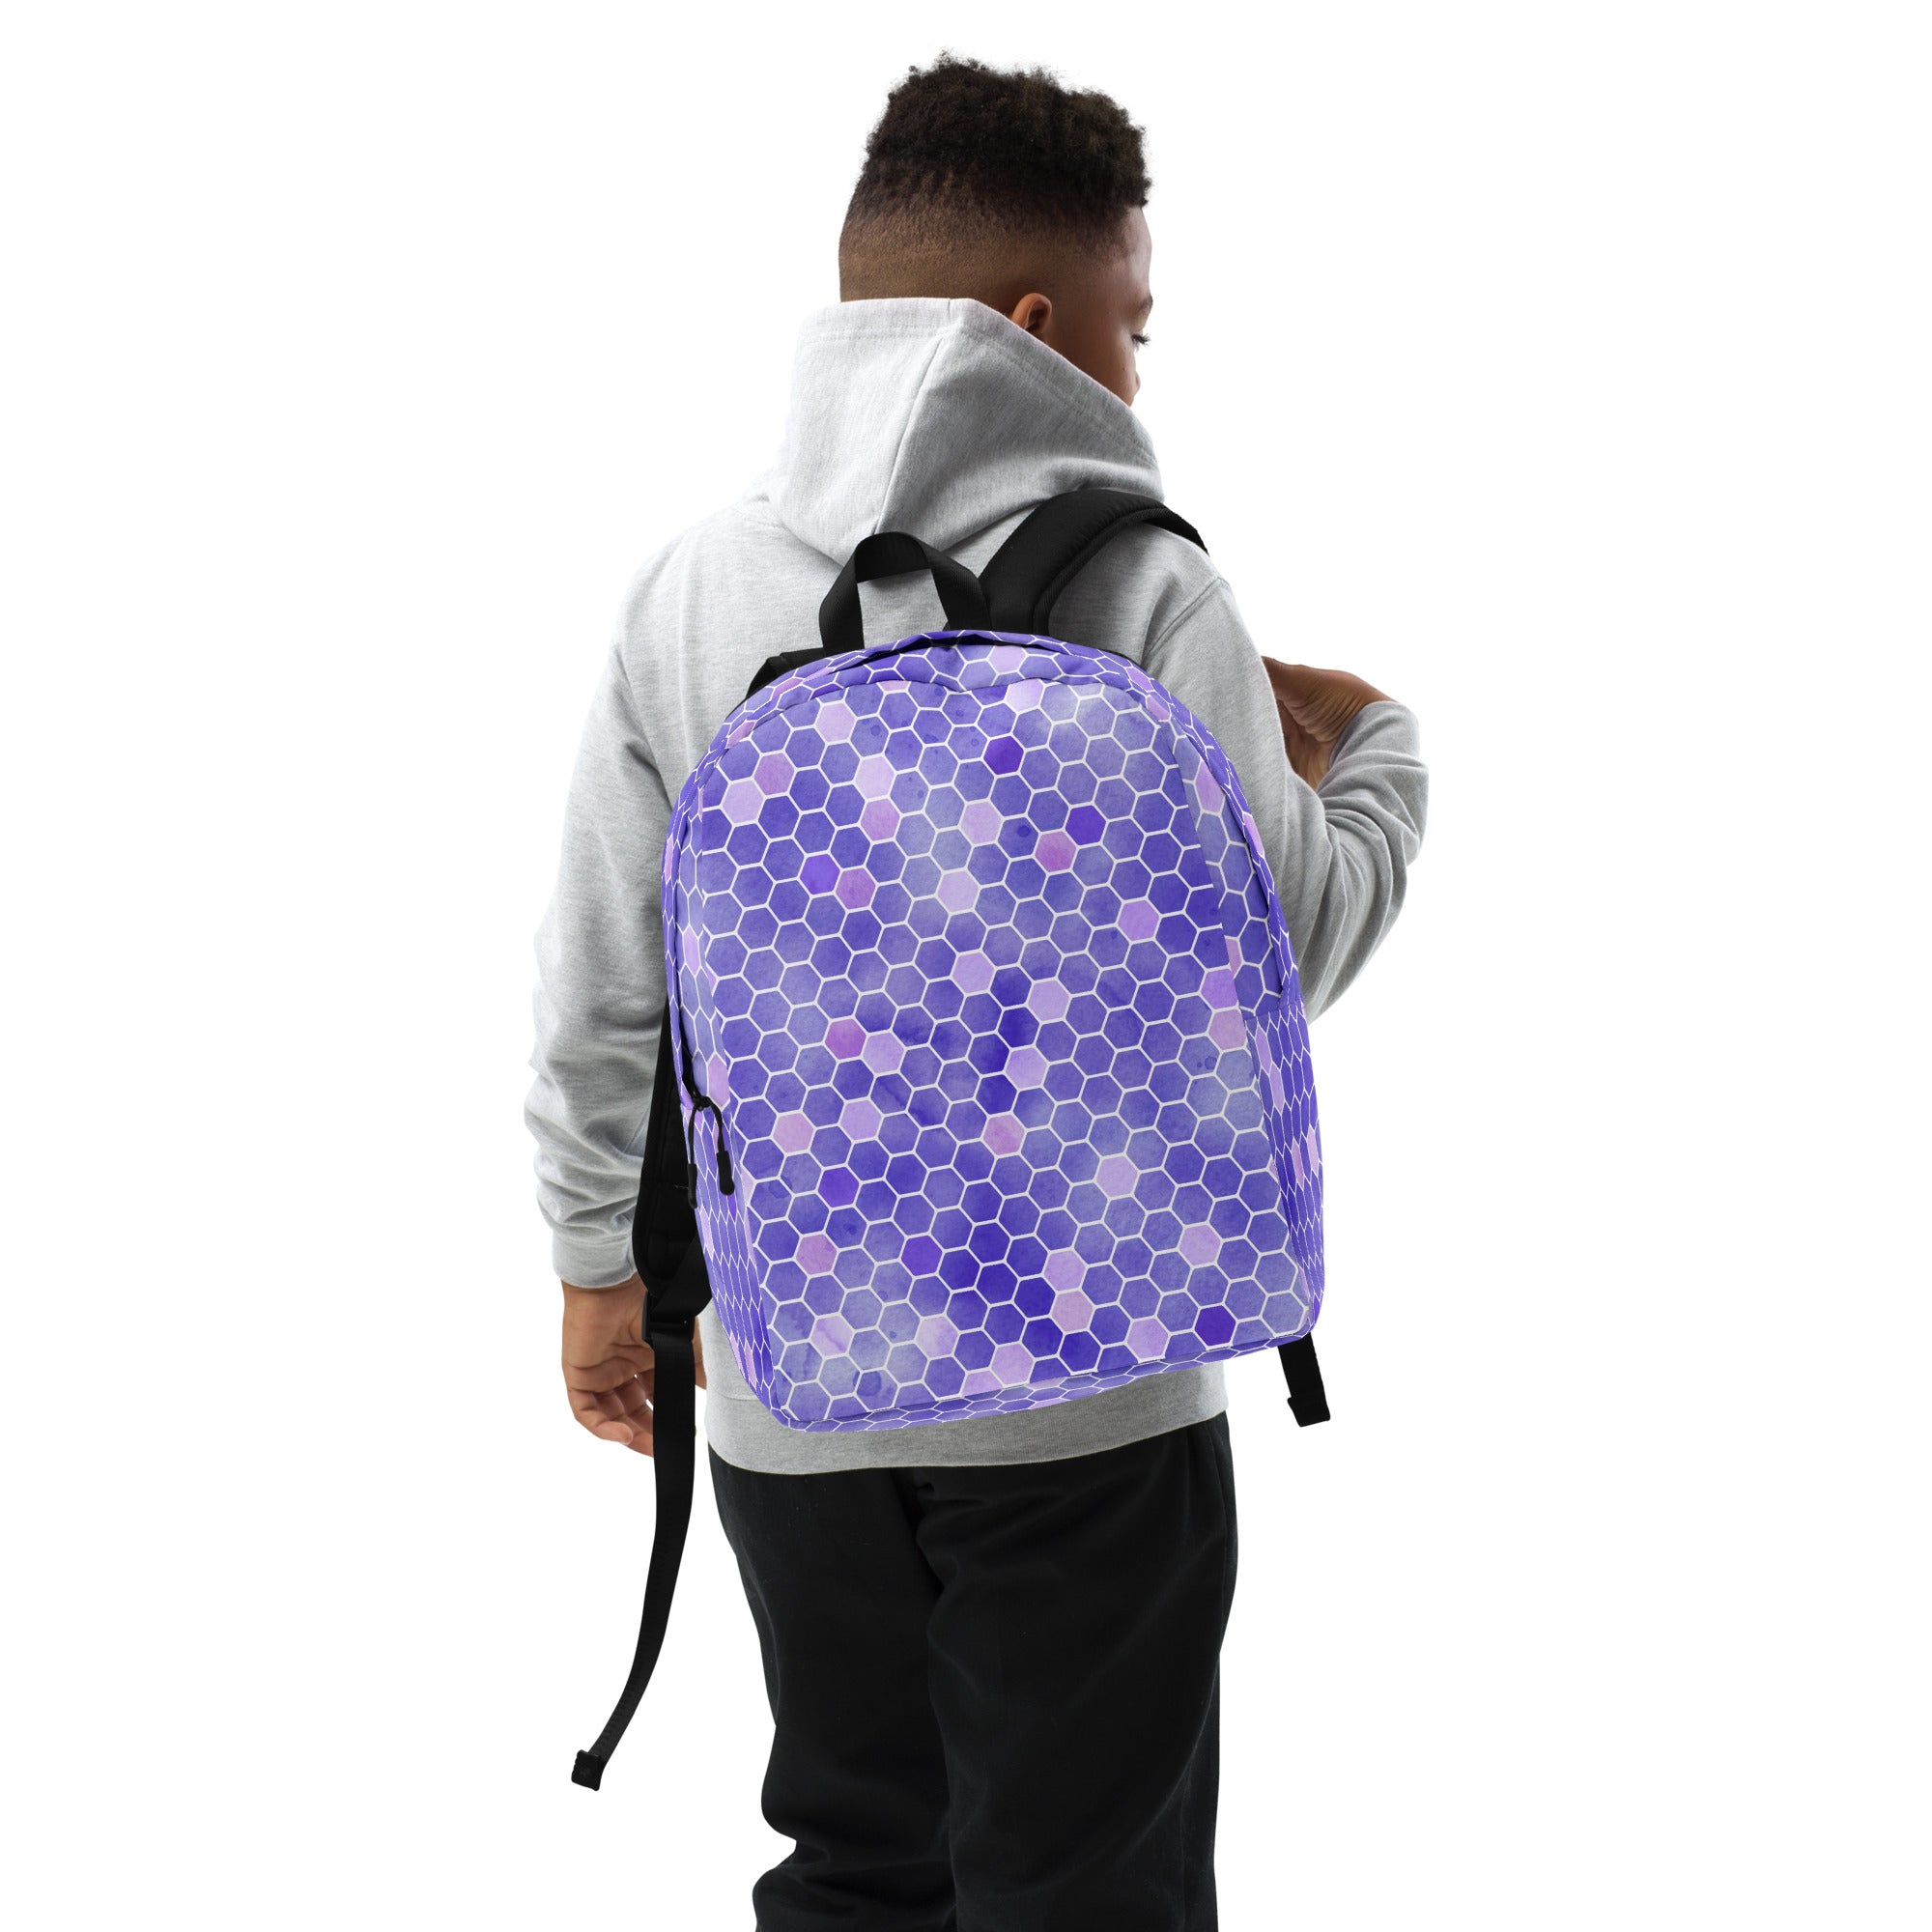 Minimalist Backpack- Honeycomb Purple